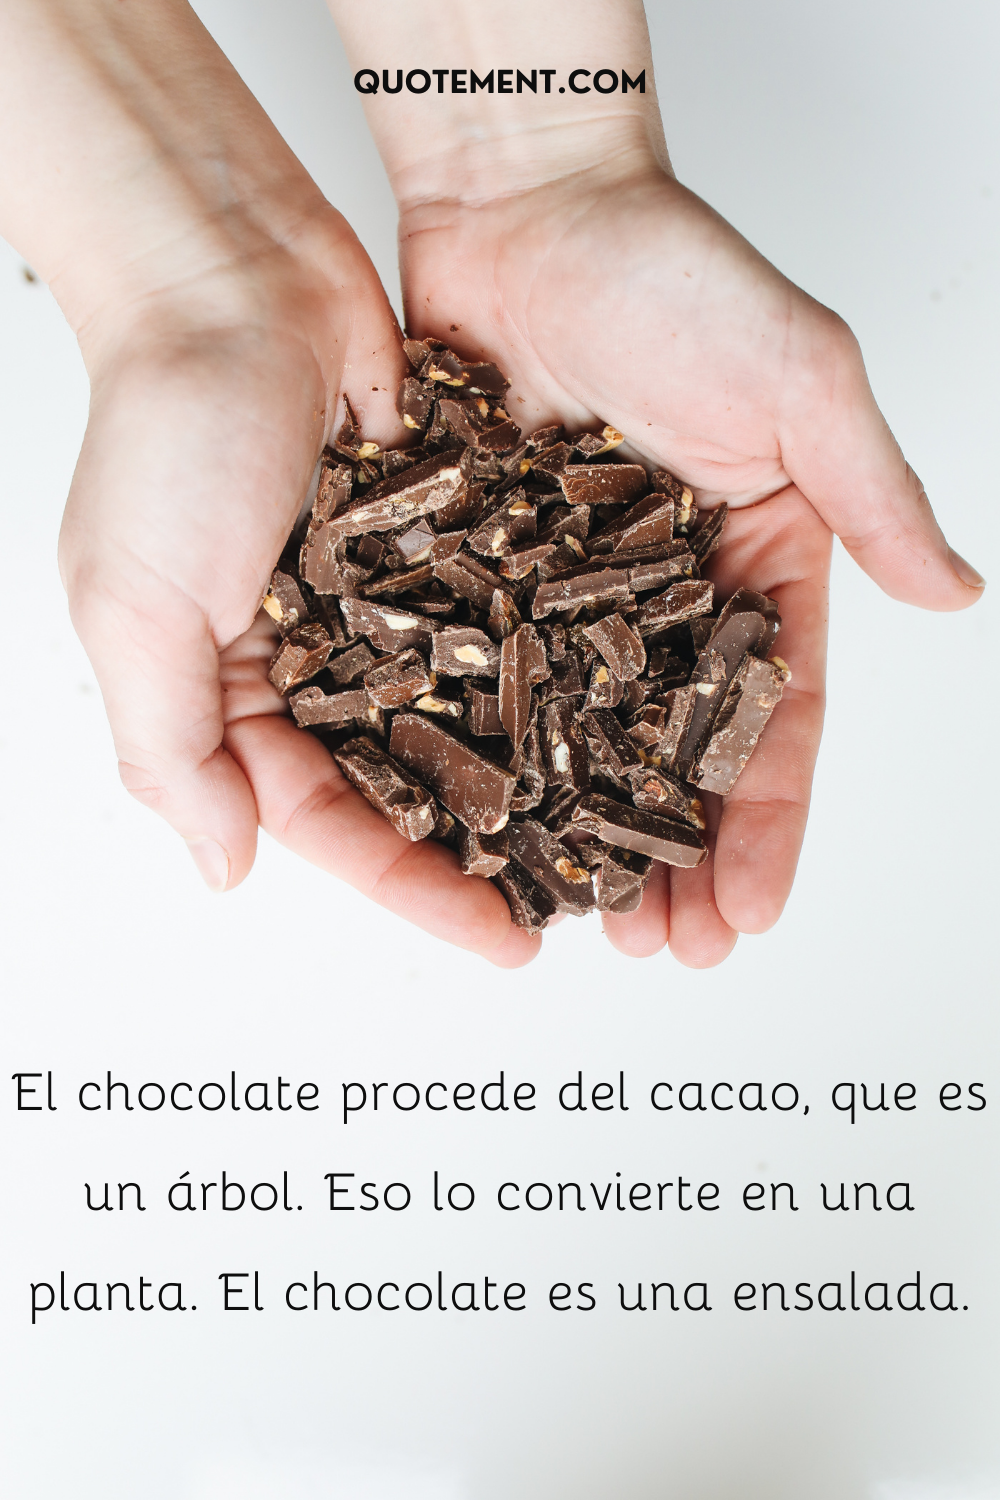 El chocolate procede del cacao, que es un árbol. Eso lo convierte en una planta. El chocolate es una ensalada.